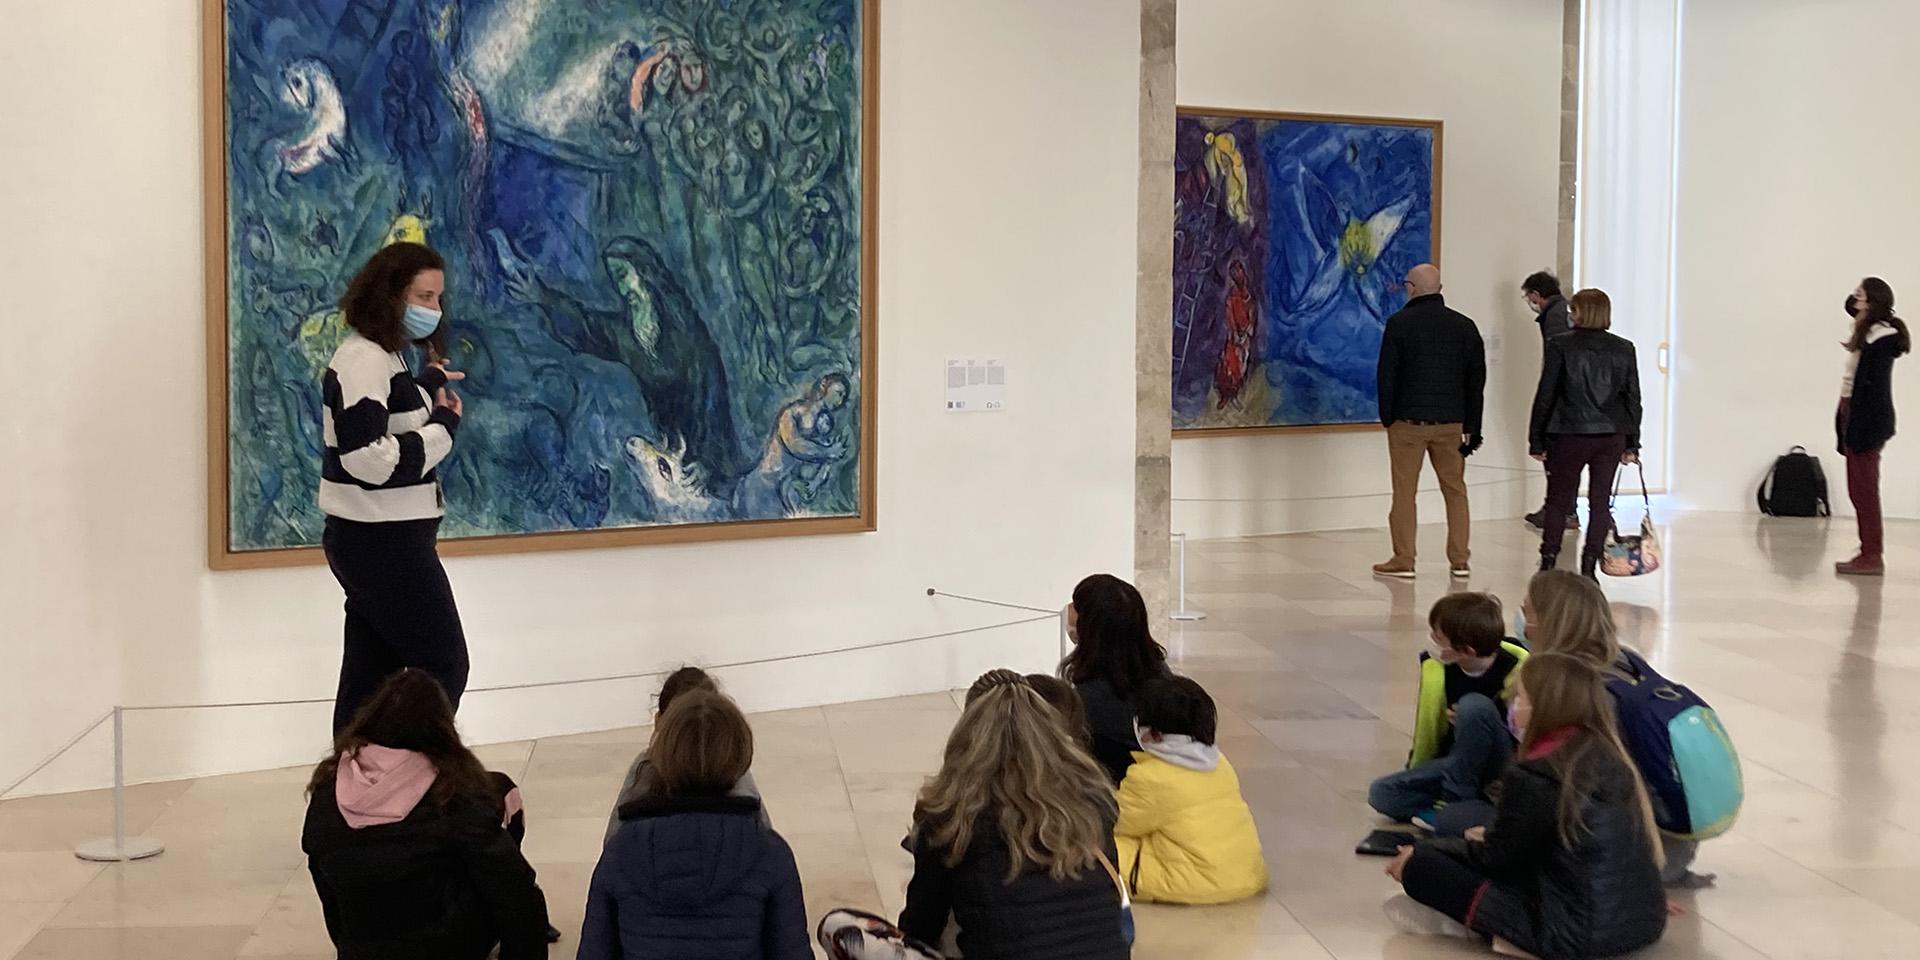 visite guidée, salle du Message Biblique, musée national Marc Chagall, Nice. (c) ADAGP, Paris, 2022